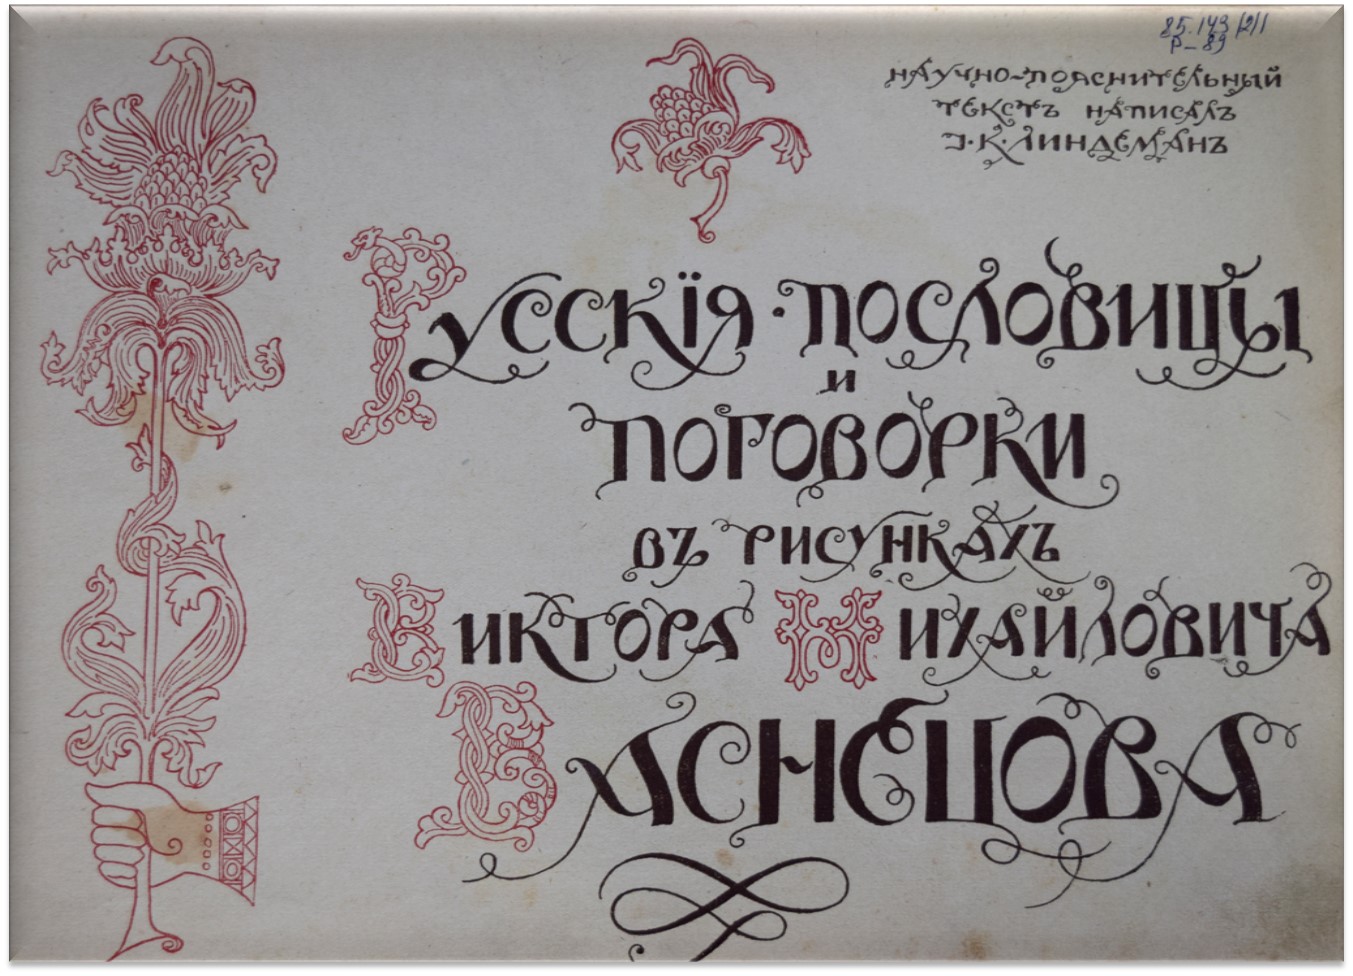 Редкое издание библиотечного фонда Азовского музея-заповедника